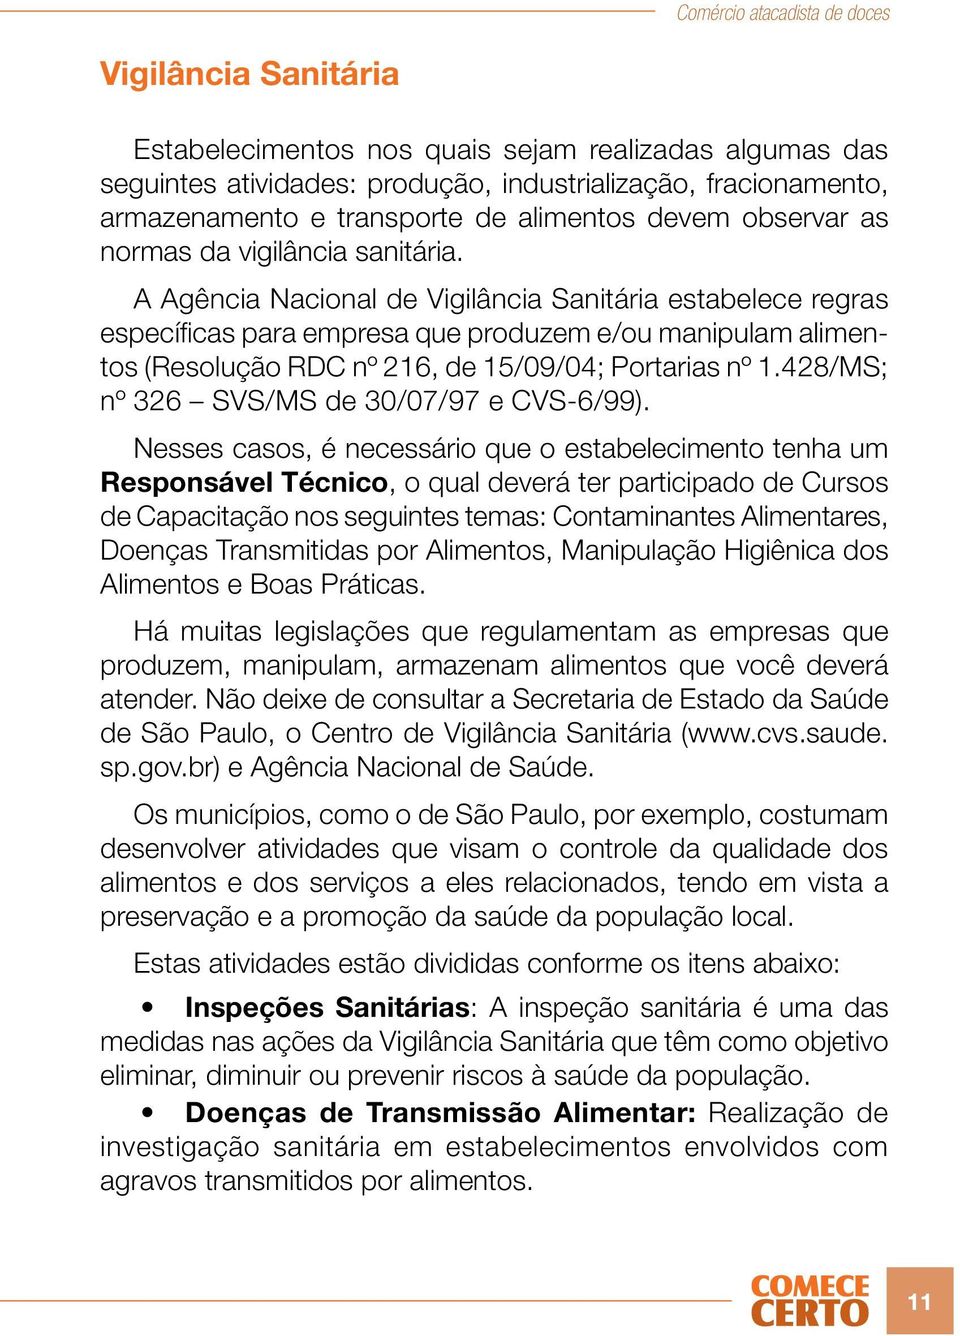 A Agência Nacional de Vigilância Sanitária estabelece regras específicas para empresa que produzem e/ou manipulam alimentos (Resolução RDC nº 216, de 15/09/04; Portarias nº 1.